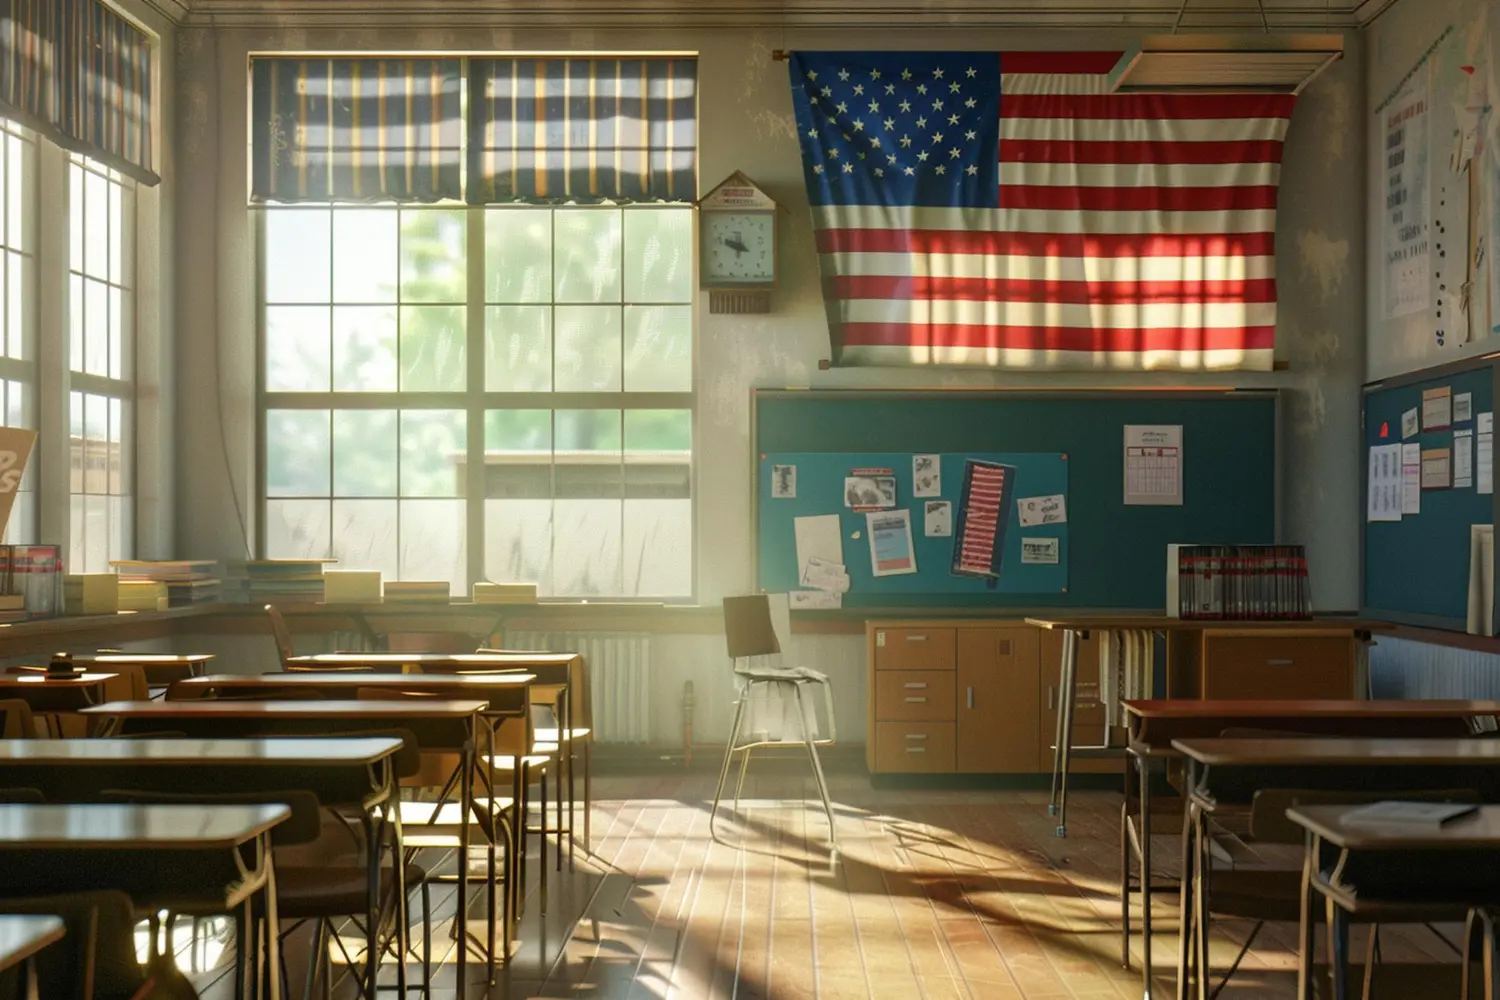 Sala de aula com bandeira dos Estados Unidos representando o teste de proficiência em inglês